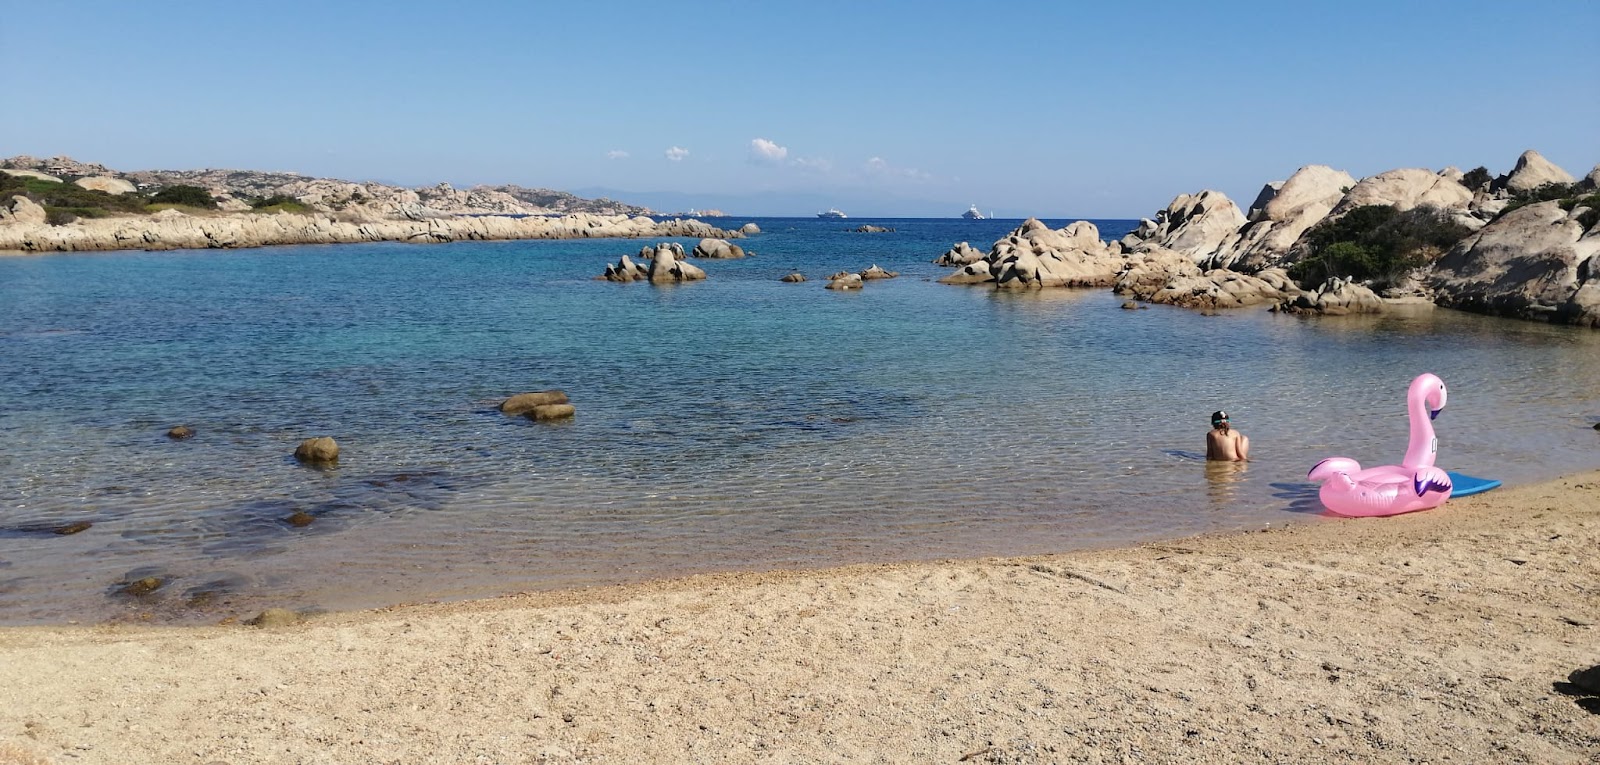 Φωτογραφία του Spiaggia Testa Del Polpo με μικρός κόλπος